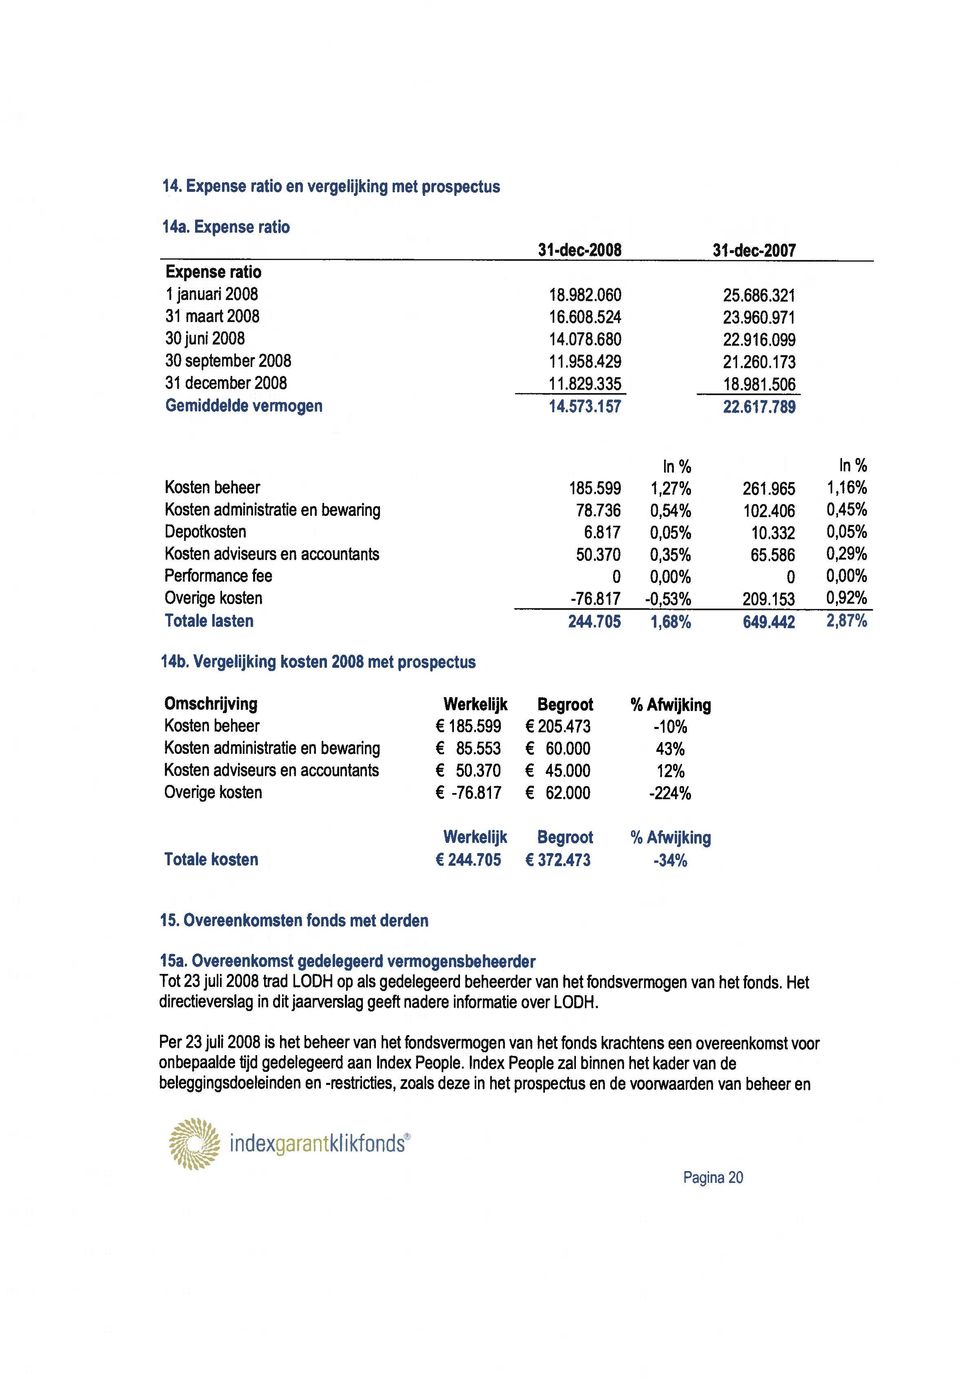 965 1,16% Kosten administratie en bewaring 78.736 0,54% 102.406 045% Depotkosten 6.817 0,05% 10.332 0,05% Kosten adviseurs en accountants 50.370 0,35% 65.